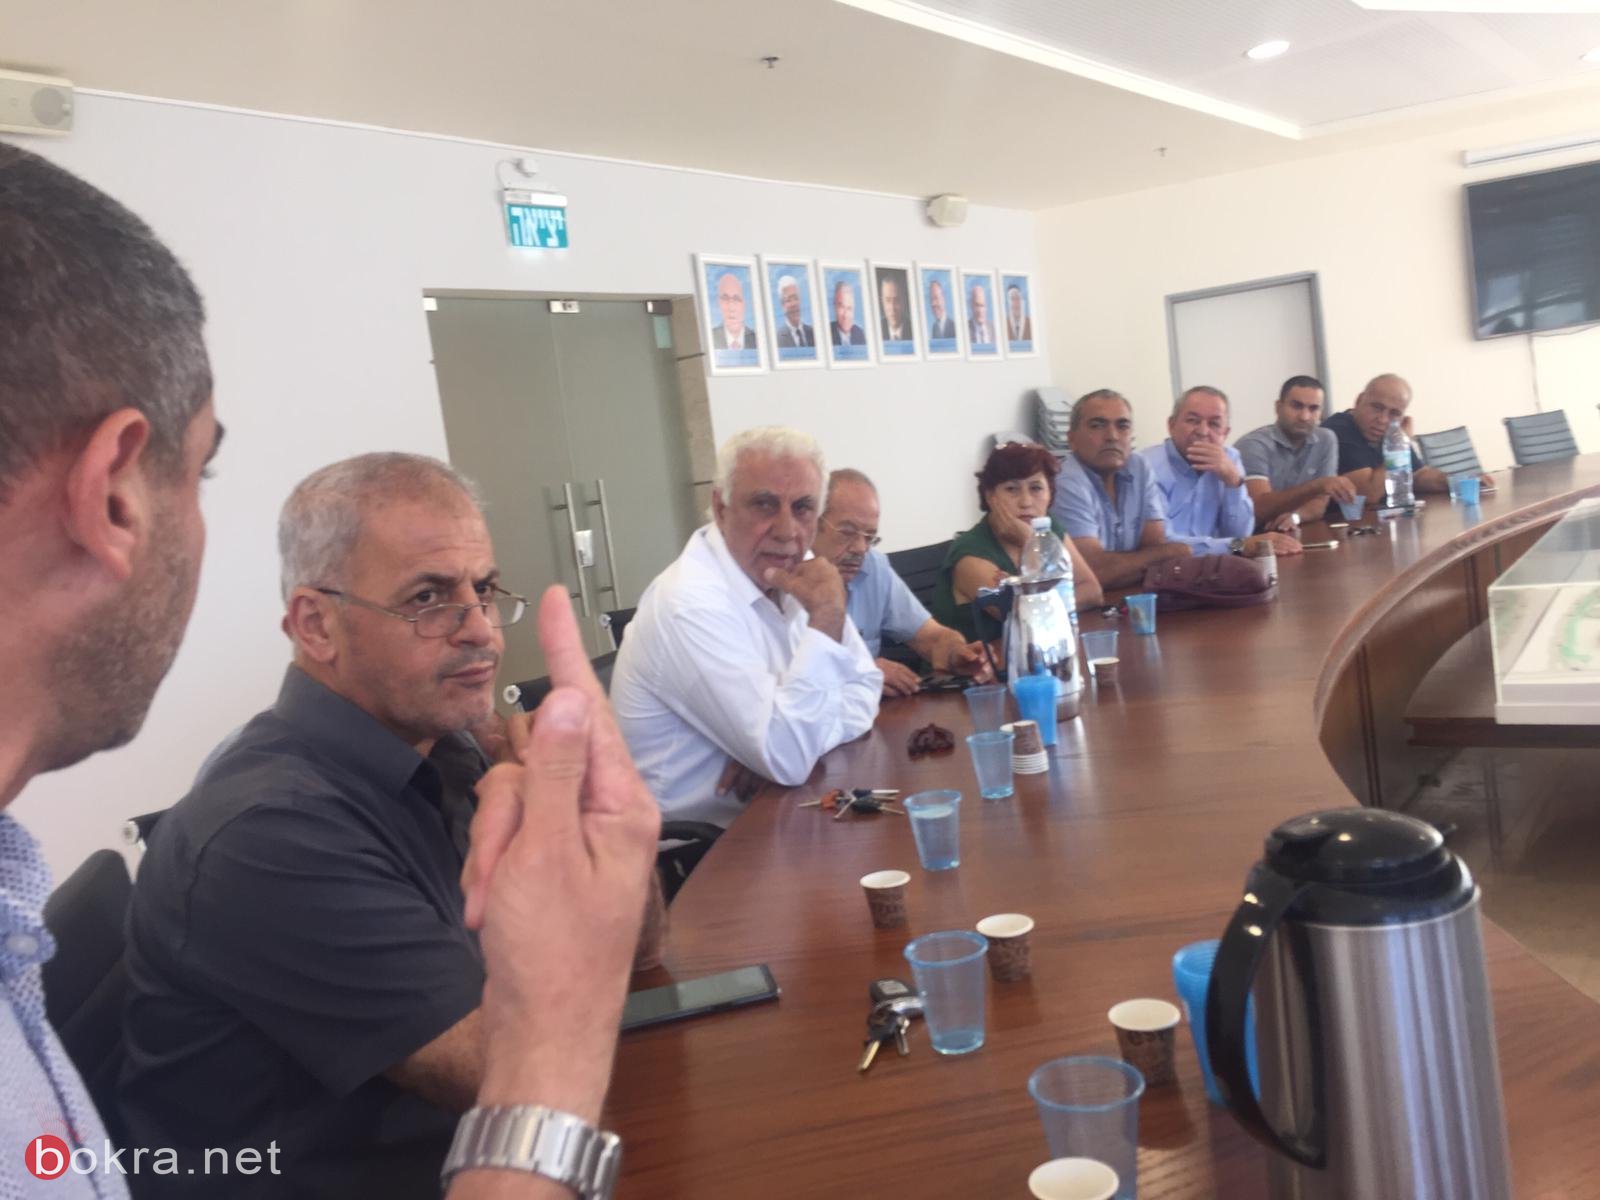 سخنين: البلدية واللجنة الشعبية تجتمع لإتمام التحضيرات لنشاطات إحياء ذكرى هبه القدس والأقصى-1